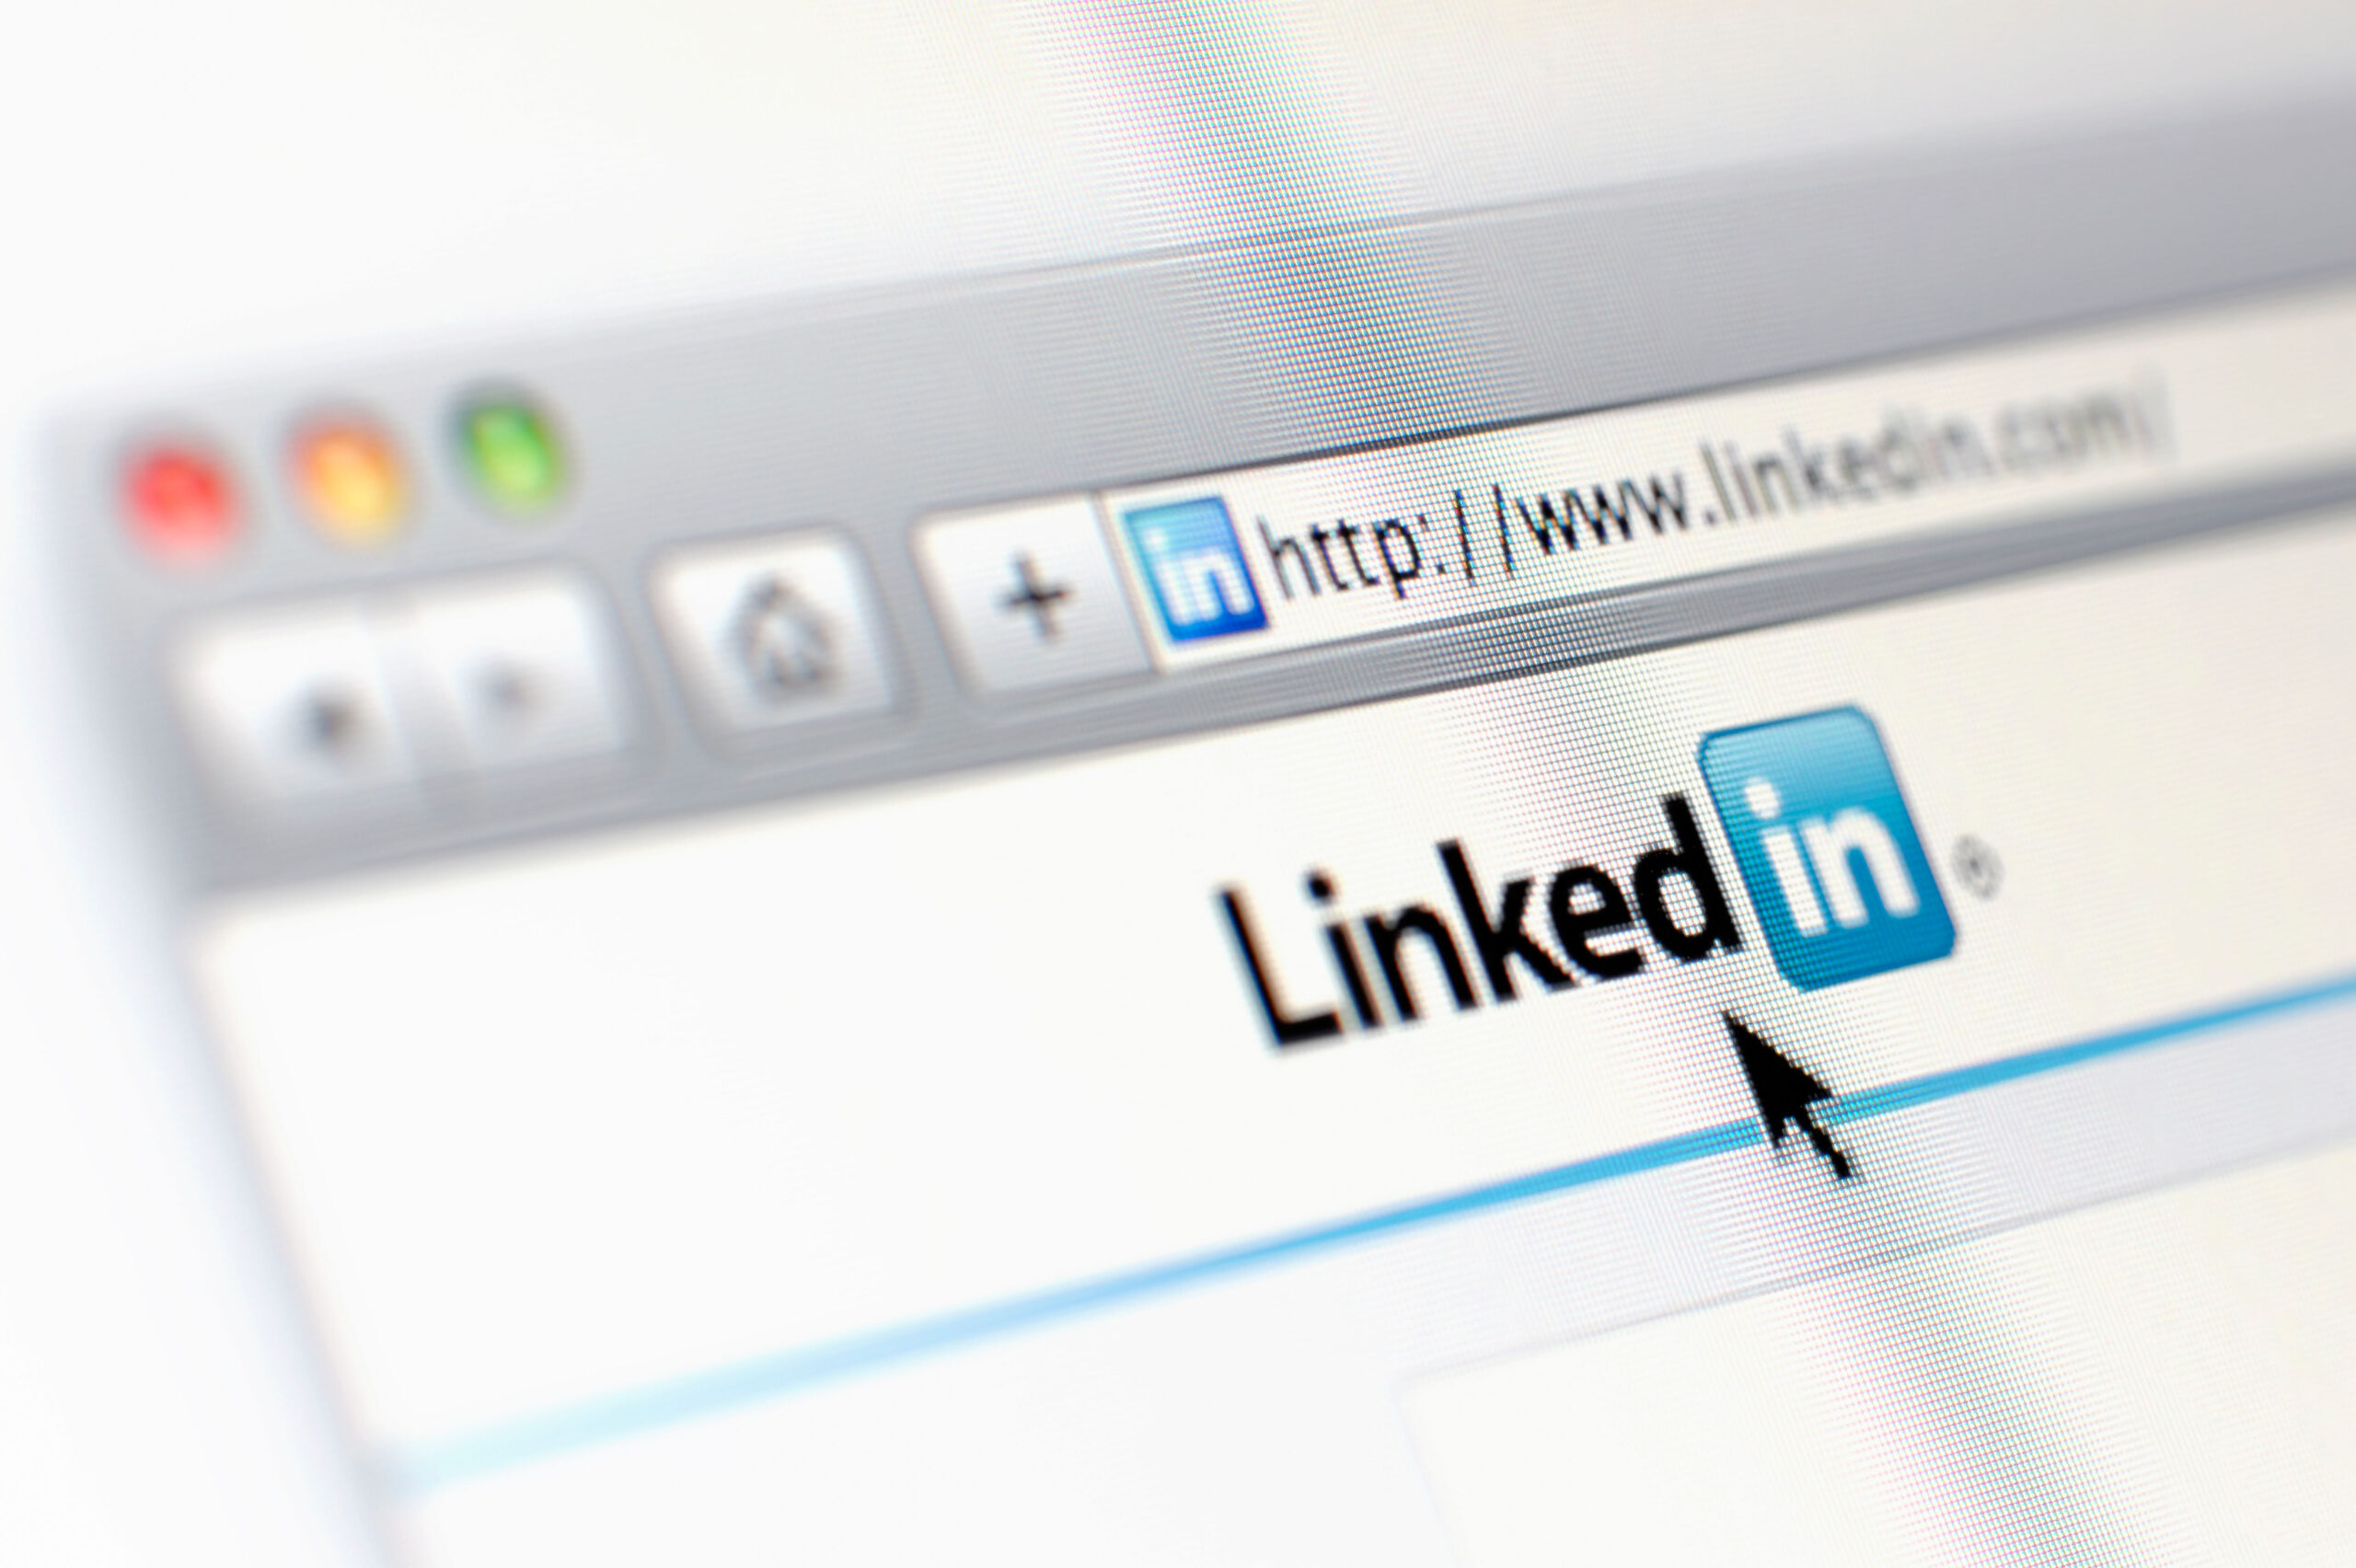 Convencer 'perfis' do LinkedIn visa trabalhadores sauditas por vazamento de informações